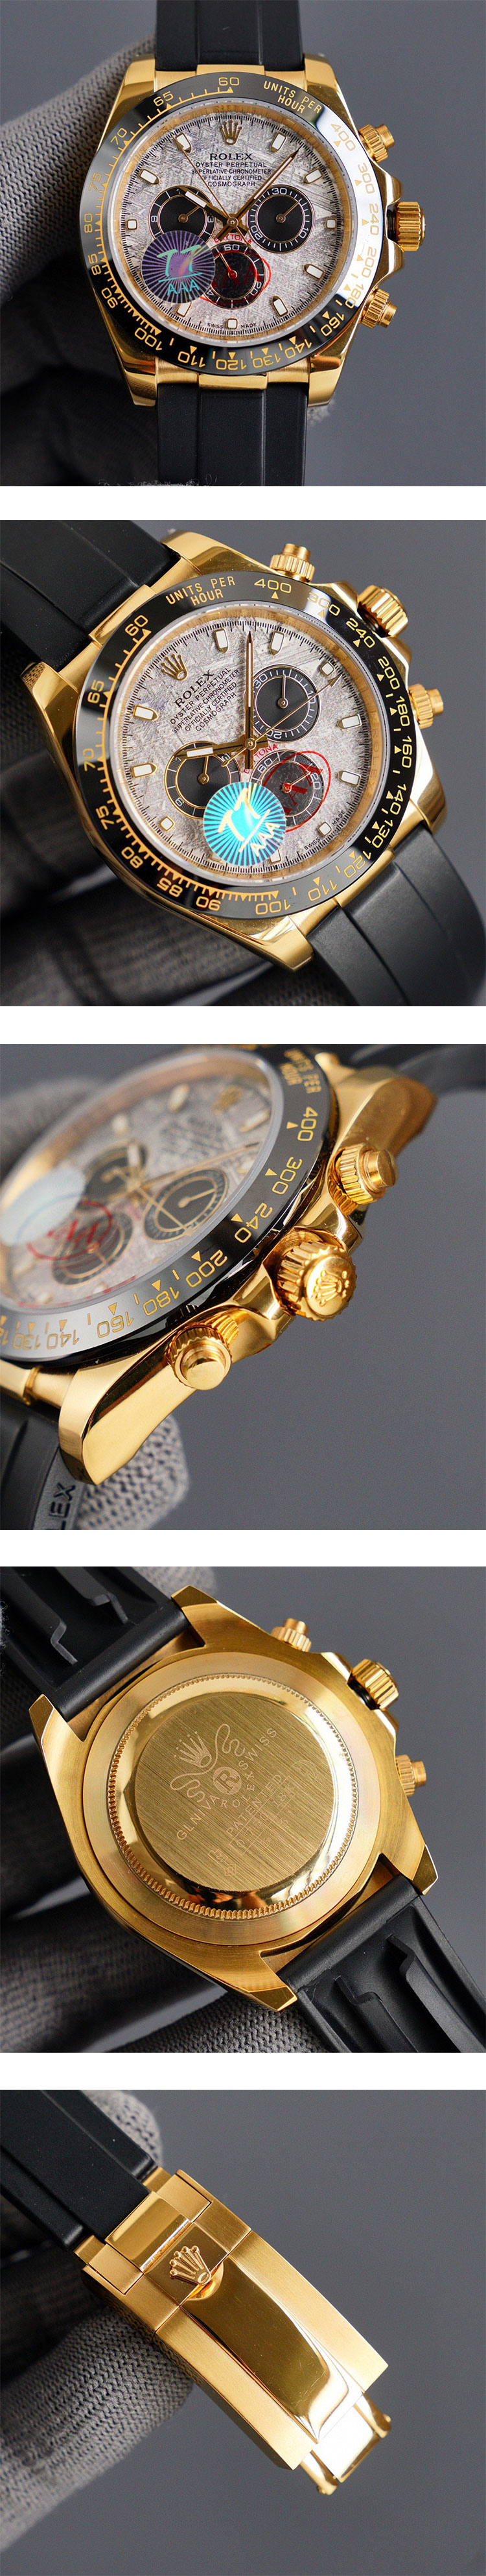 【好評腕時計】ロレックスコピー コスモグラフ デイトナ 40mm メテオライト M116518LN-0076 最安値に挑戦中